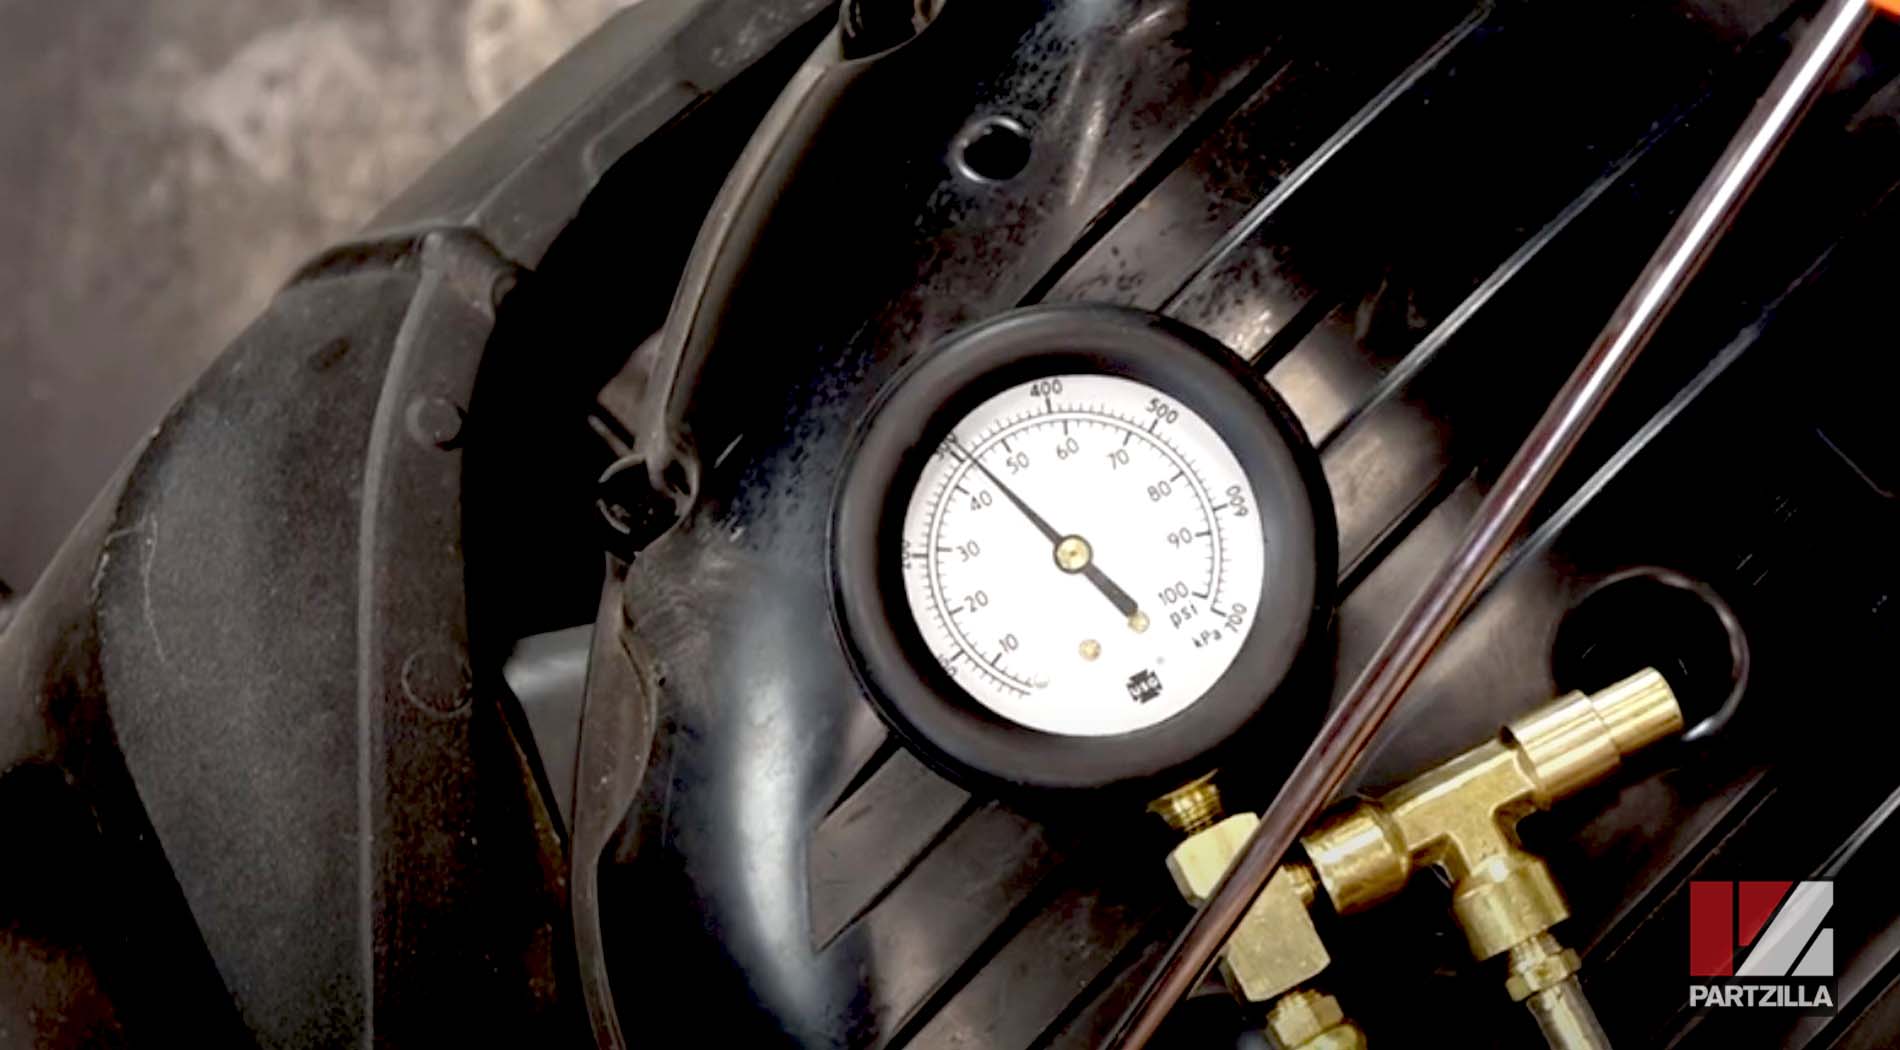 GSXR fuel pump pressure test